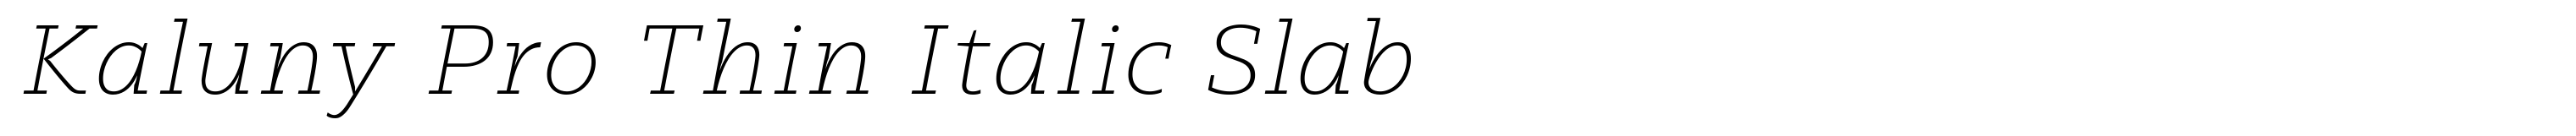 Kaluny Pro Thin Italic Slab